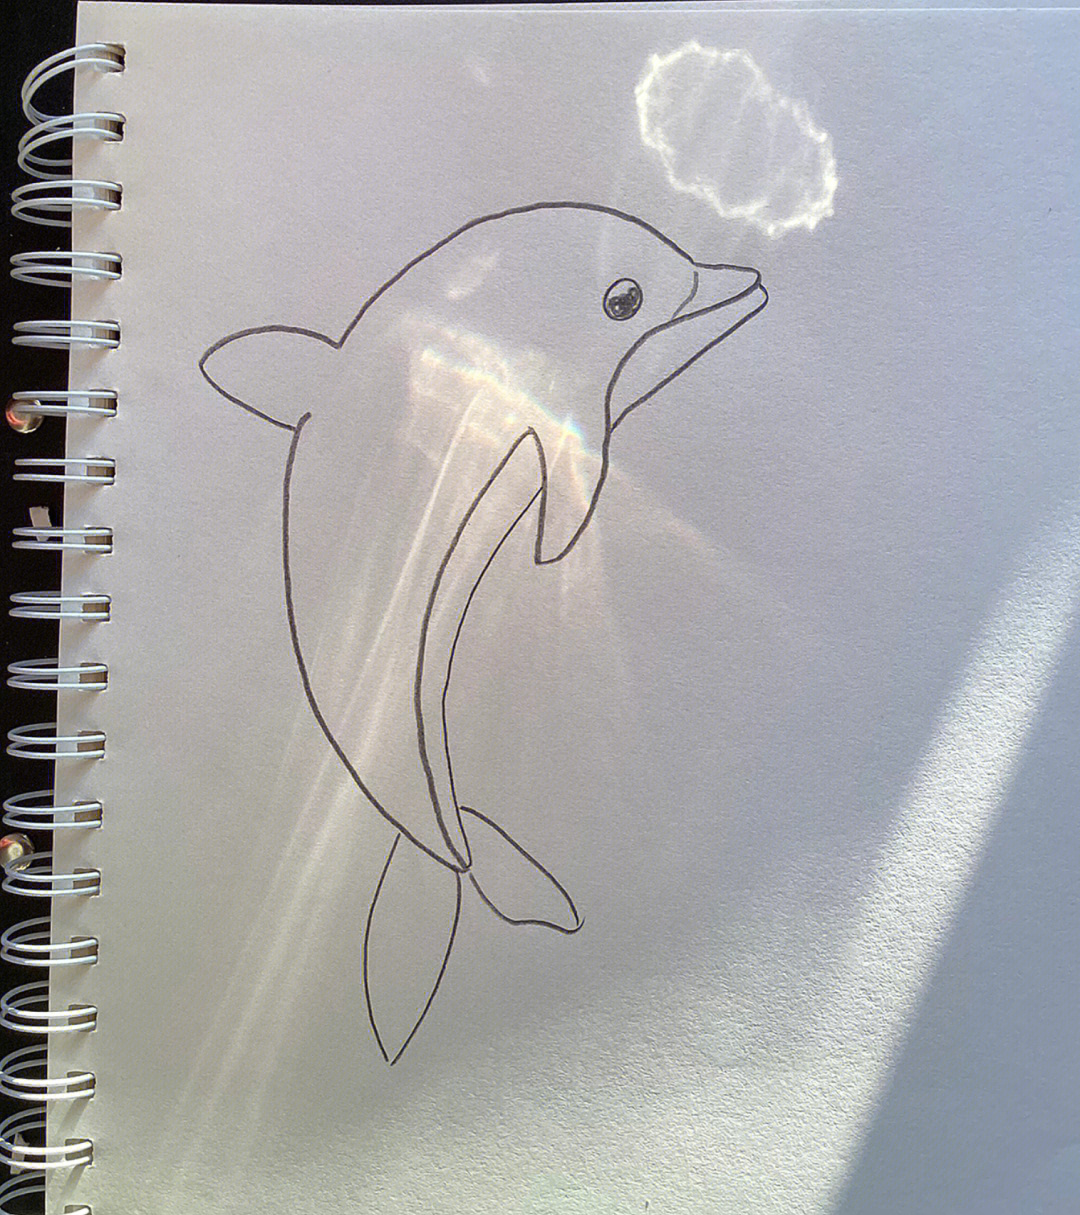 海豚图片简笔画简单图片